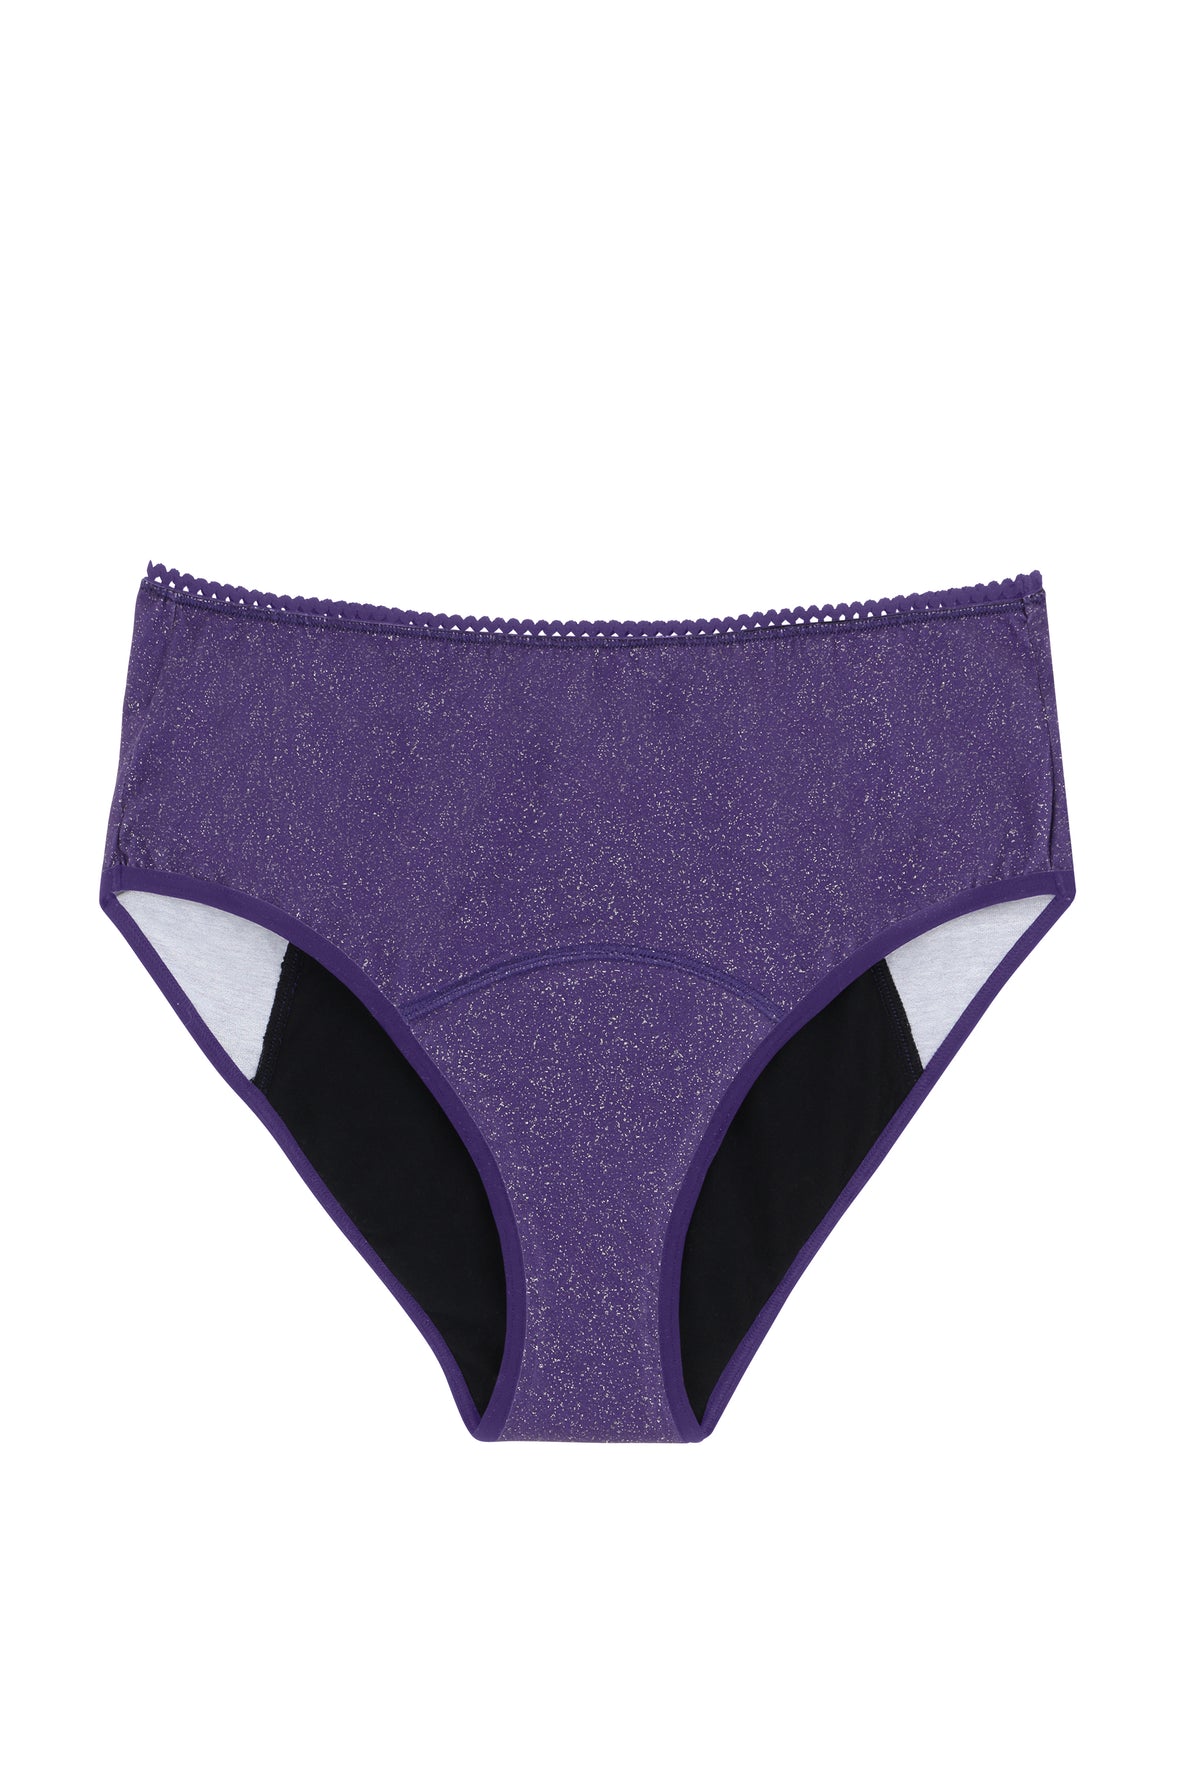 Culotte taille haute menstruelle - Flux nuit | Paillettes violet